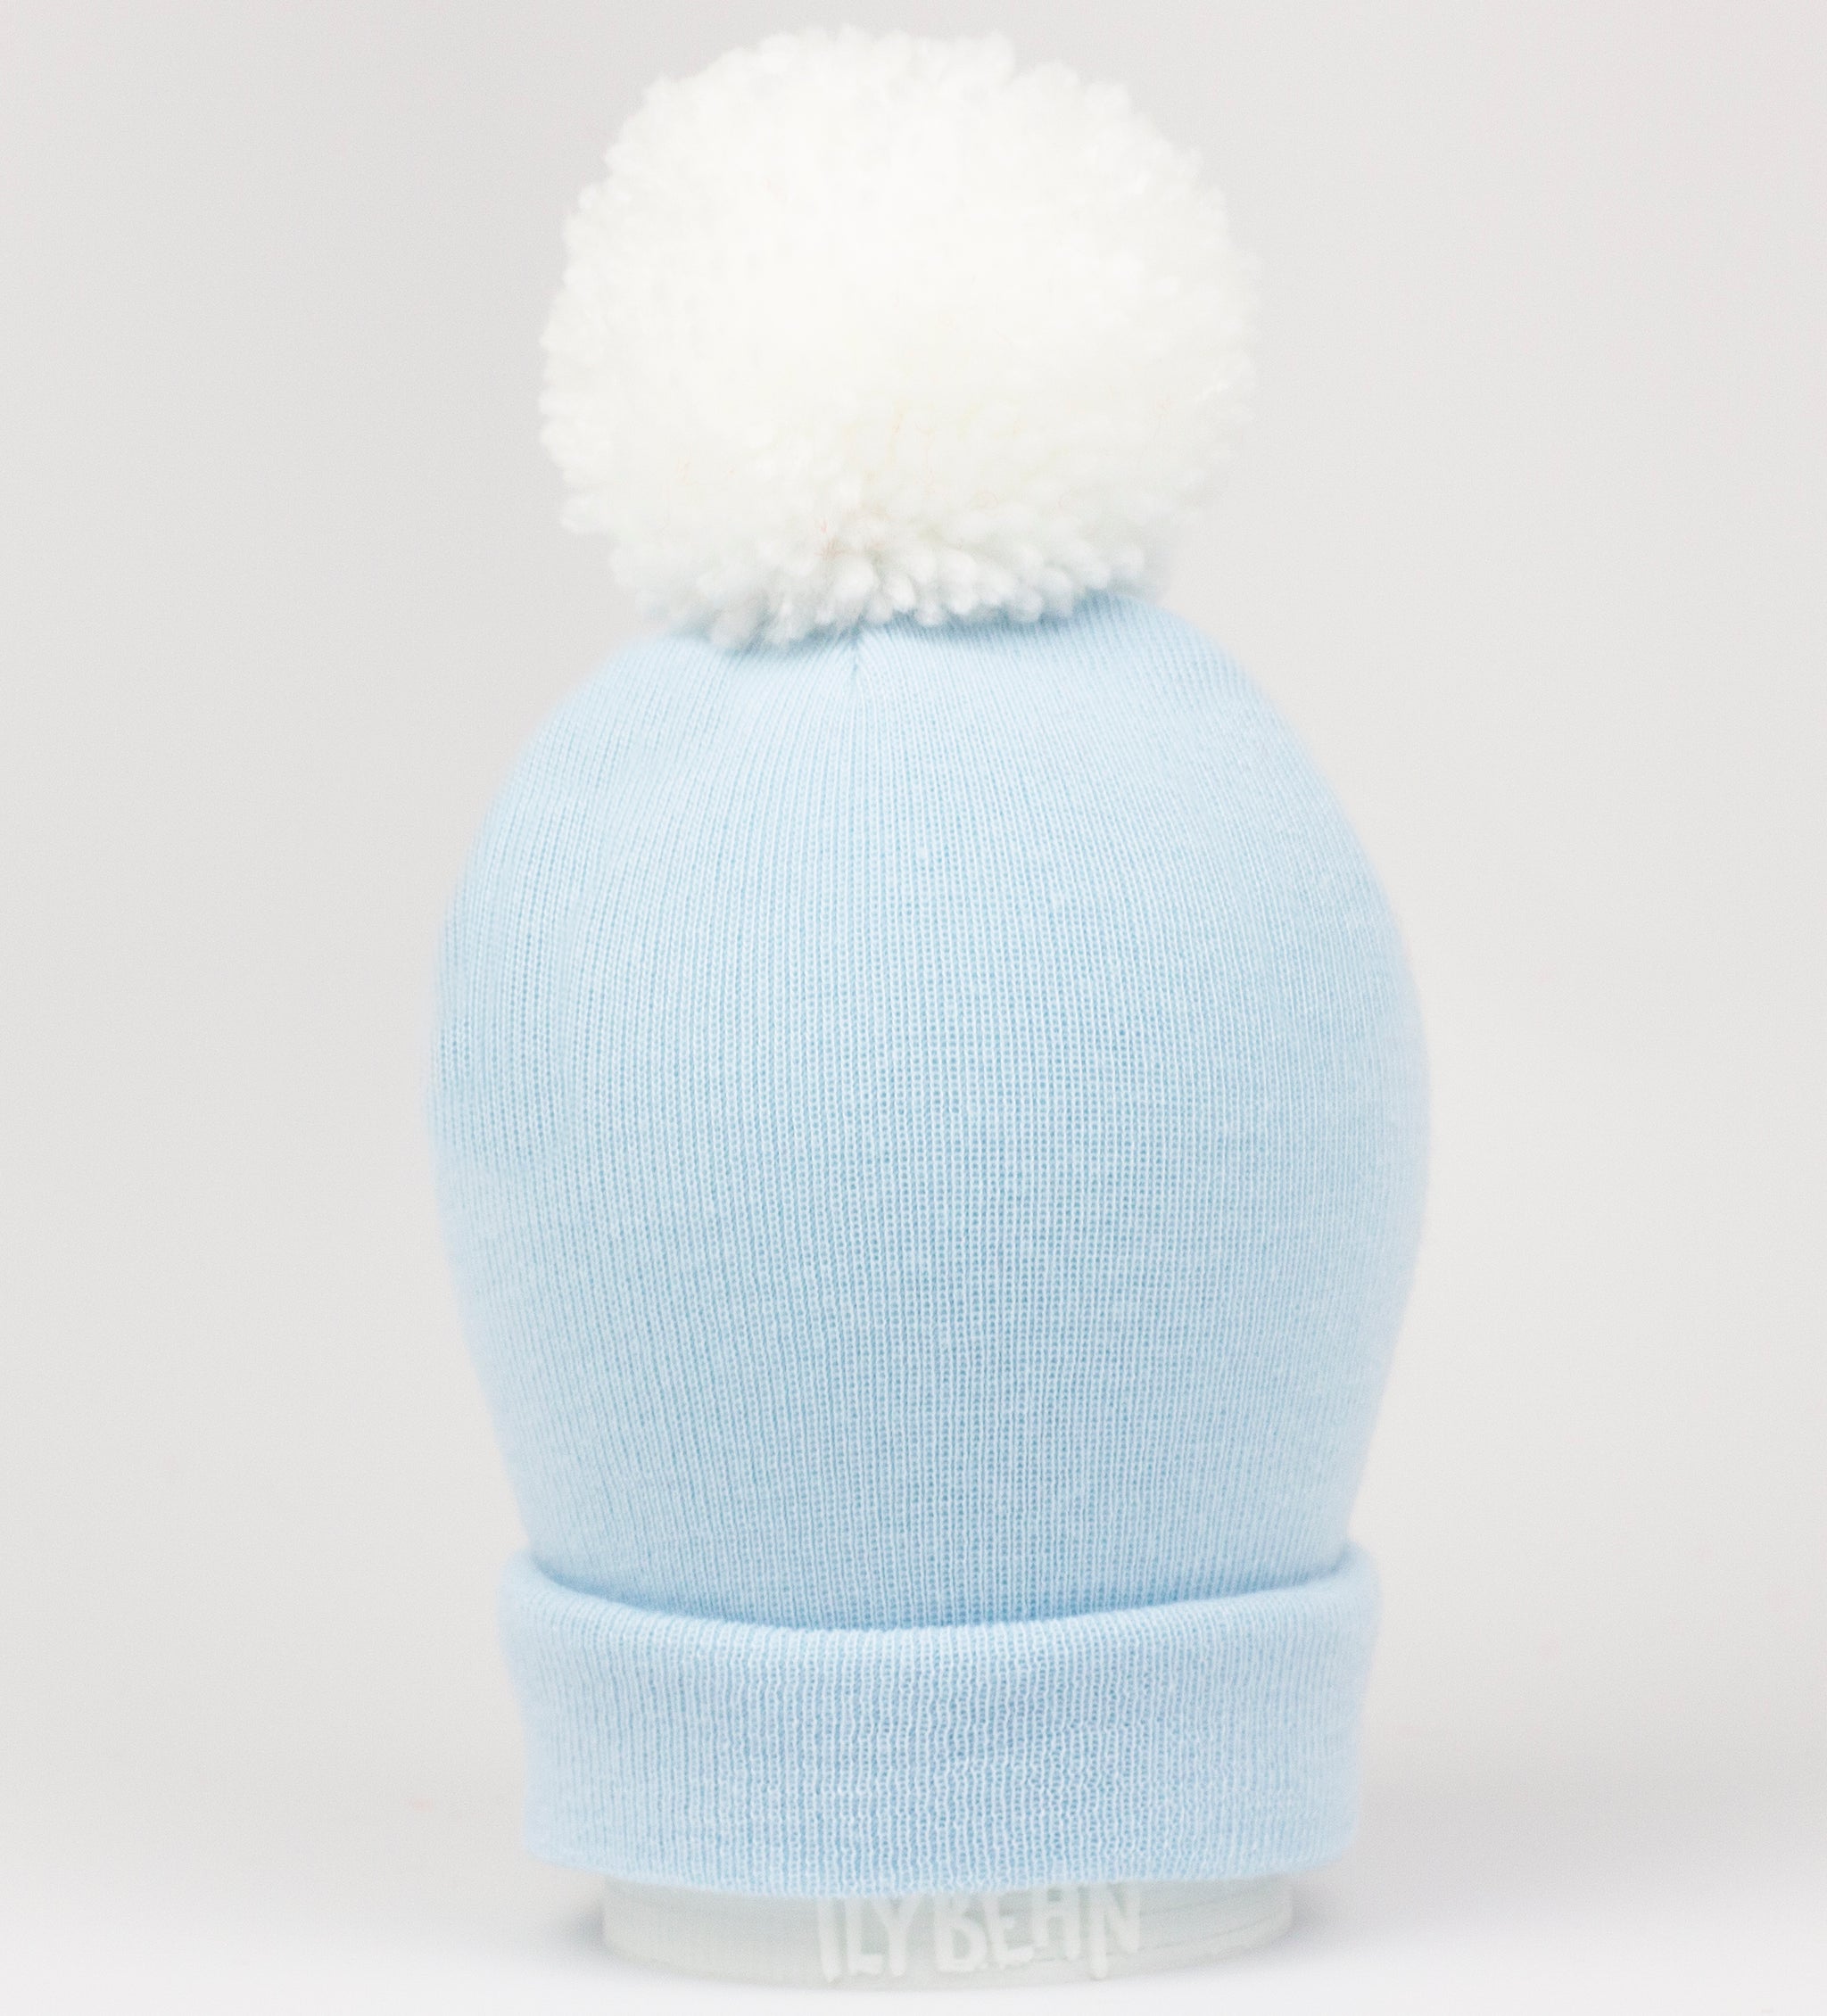 ilybean Baby Blue Beanie with White Pom Pom - Personalization Optional